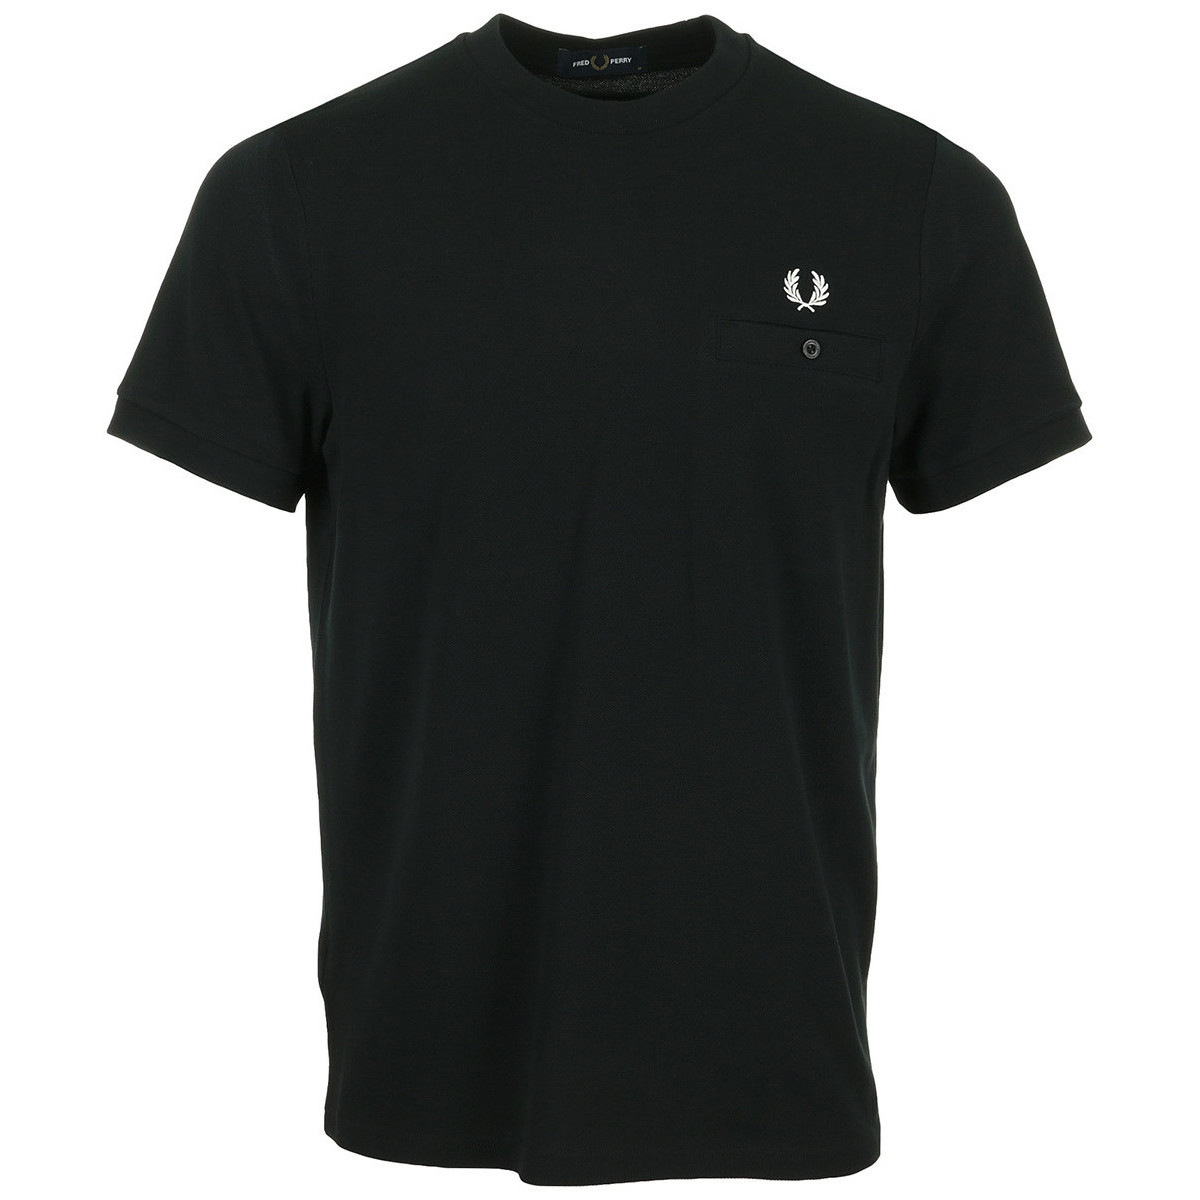 tekstylia Męskie T-shirty z krótkim rękawem Fred Perry Pocket Detail Pique Shirt Czarny